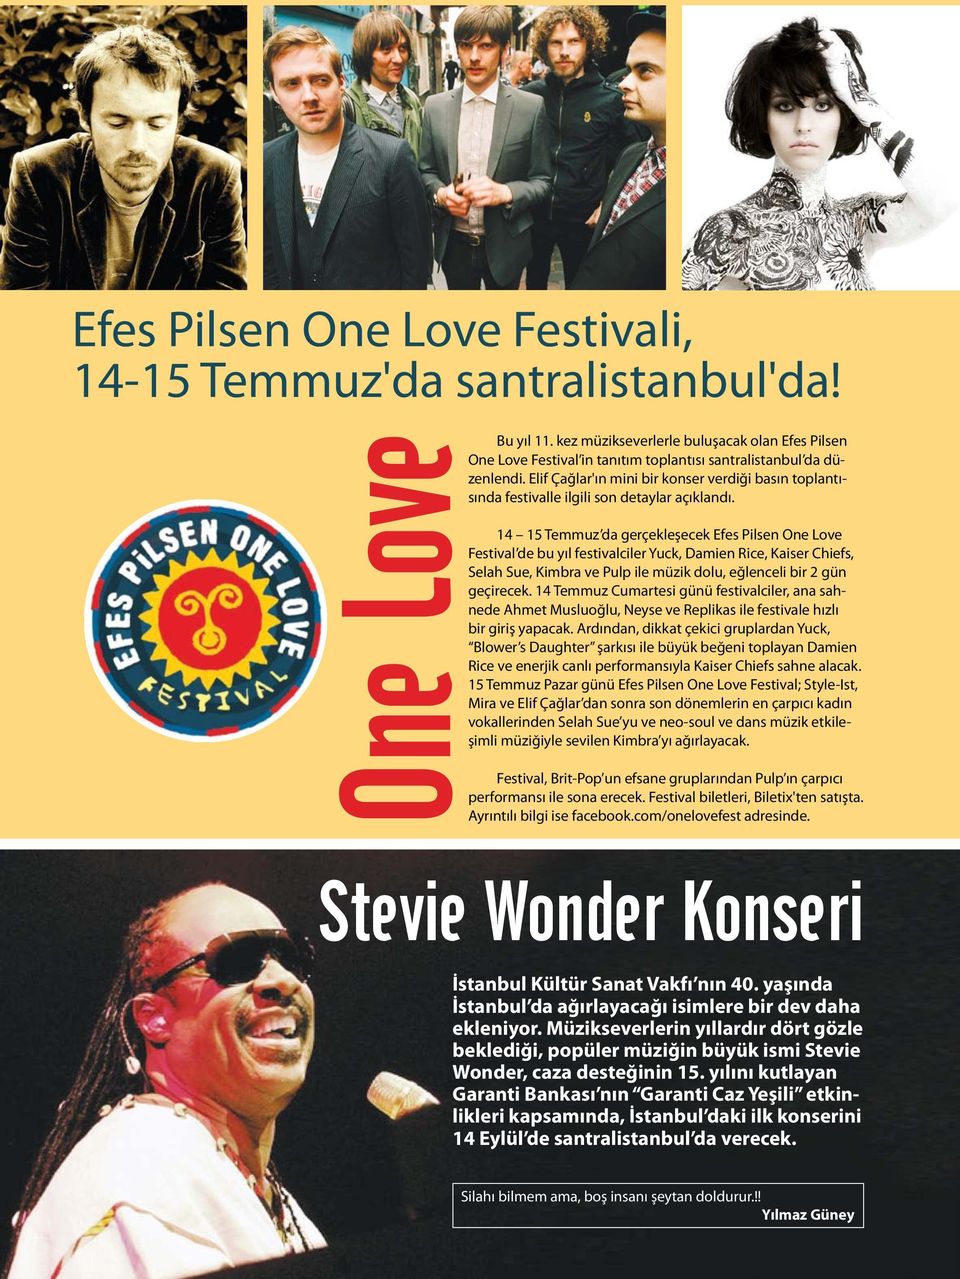 14 15 Temmuz da gerçekleşecek Efes Pilsen One Love Festival de bu yıl festivalciler Yuck, Damien Rice, Kaiser Chiefs, Selah Sue, Kimbra ve Pulp ile müzik dolu, eğlenceli bir 2 gün geçirecek.